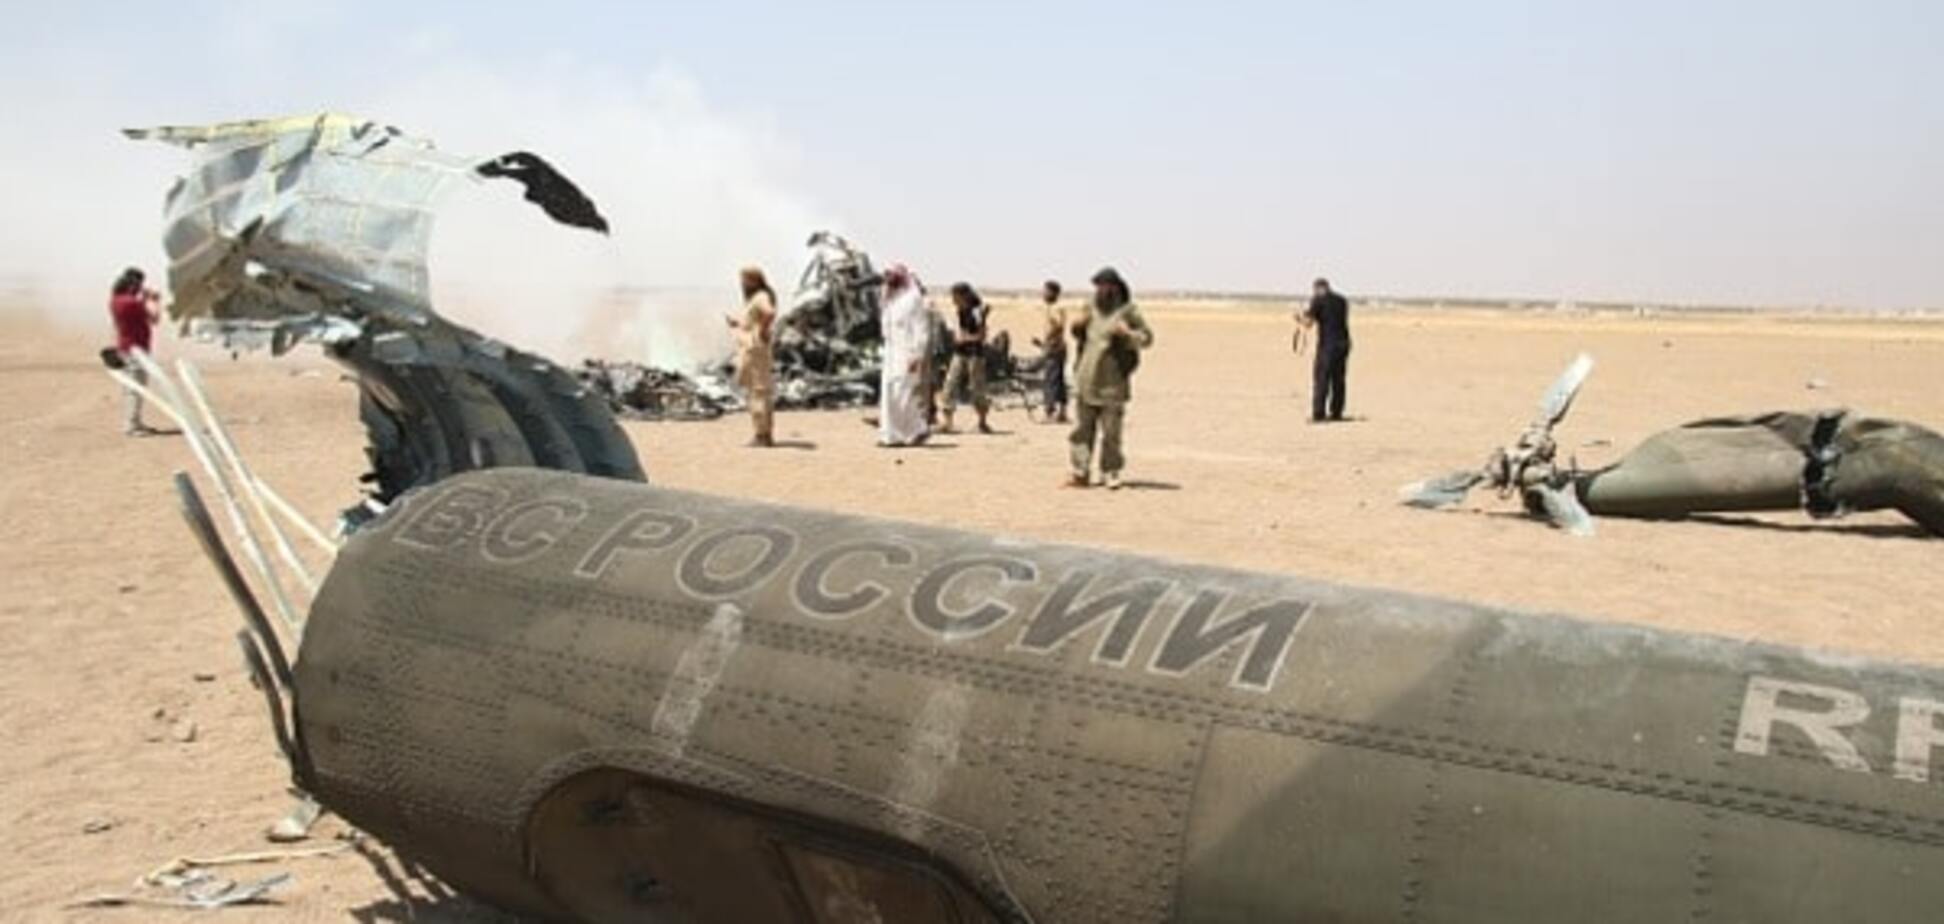 Ми-8 сбит в Сирии